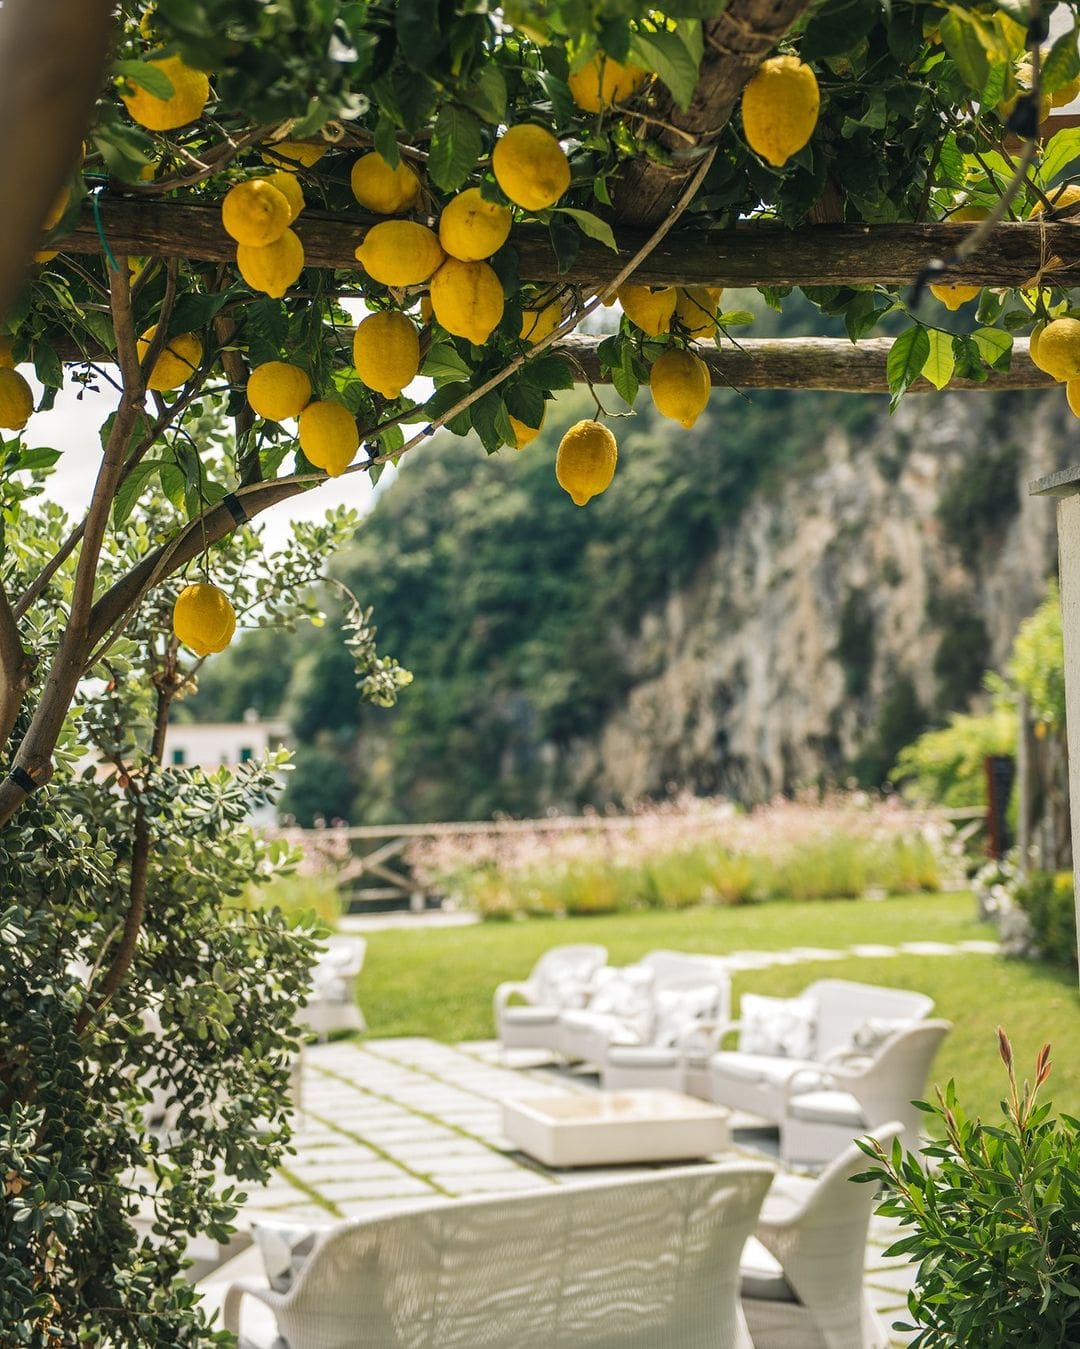 Acogedora zona chill out en Giardini del Fuenti, rodeada de aromáticos limoneros, con asientos cómodos y una atmósfera relajante, ideal para descansar y disfrutar en la Costa Amalfitana.